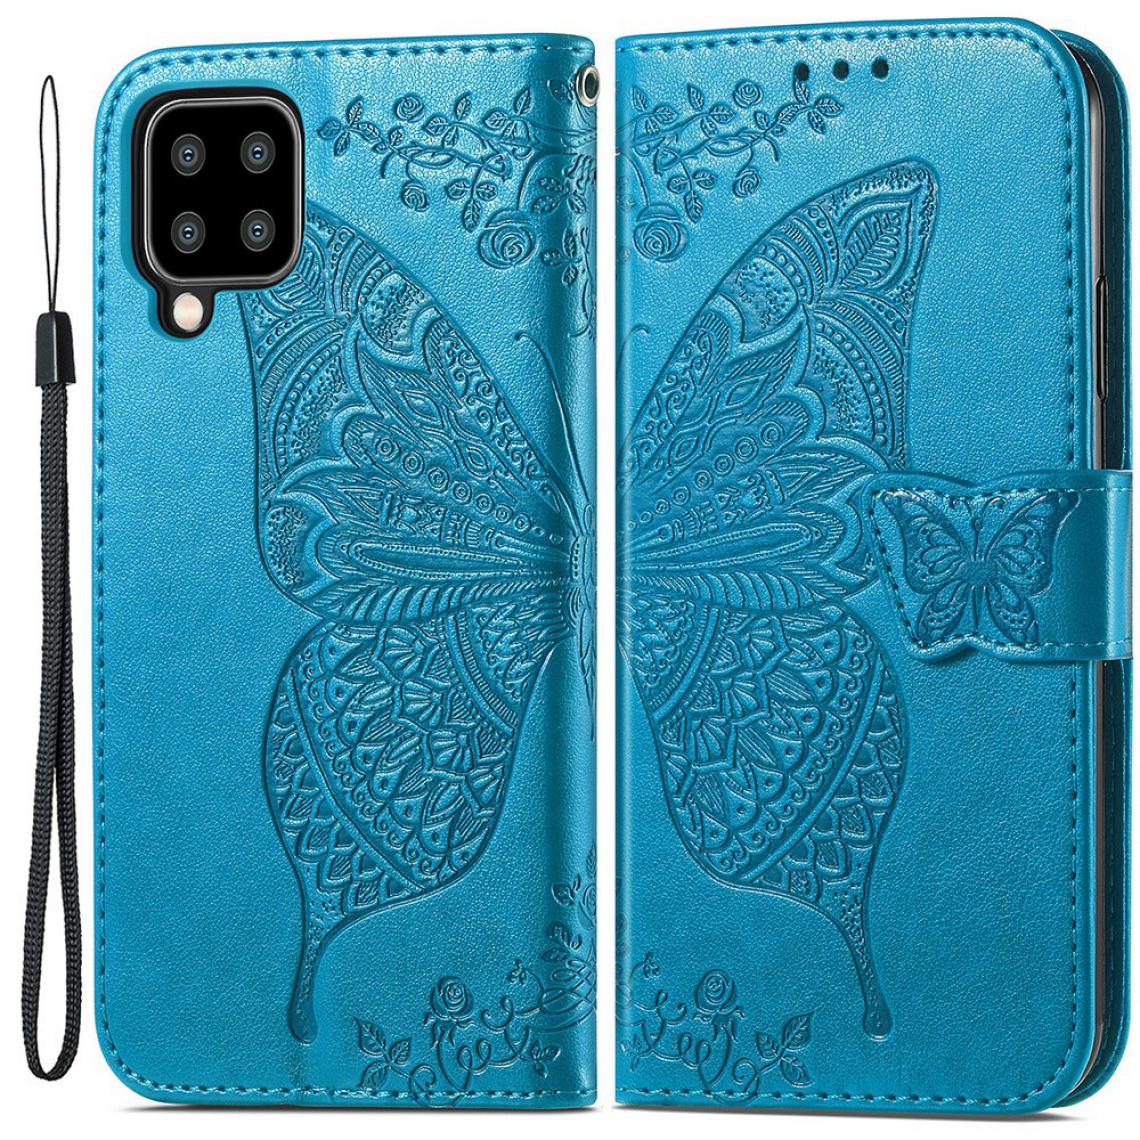 Other - Etui en PU Impression de gros papillons avec support bleu pour votre Samsung Galaxy A22 4G (EU Version) - Coque, étui smartphone